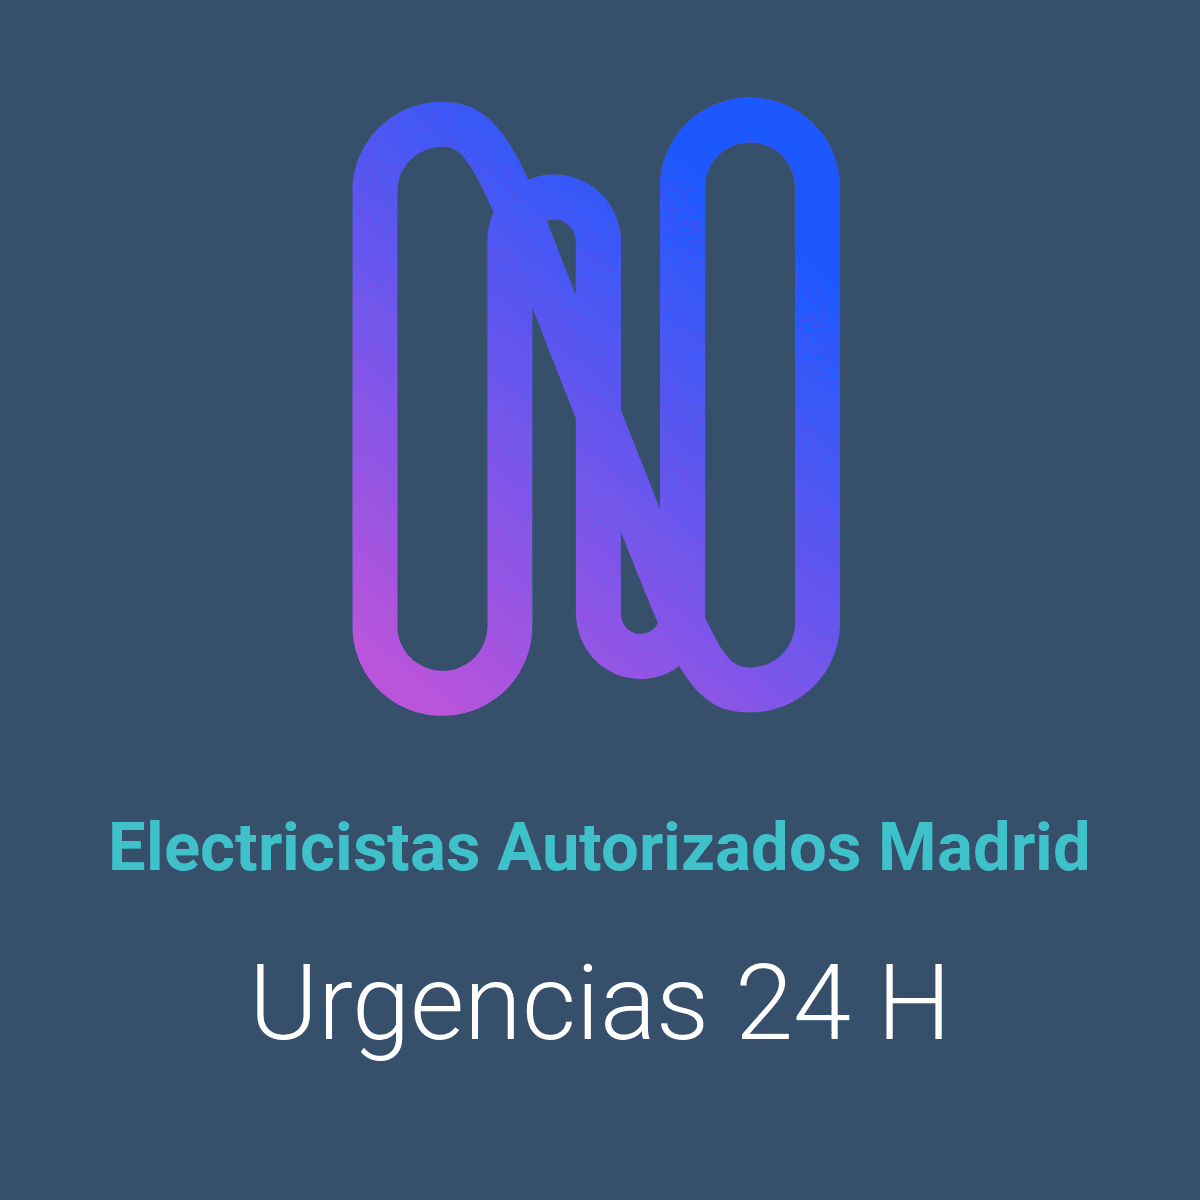 Electricistas Autorizados Madrid